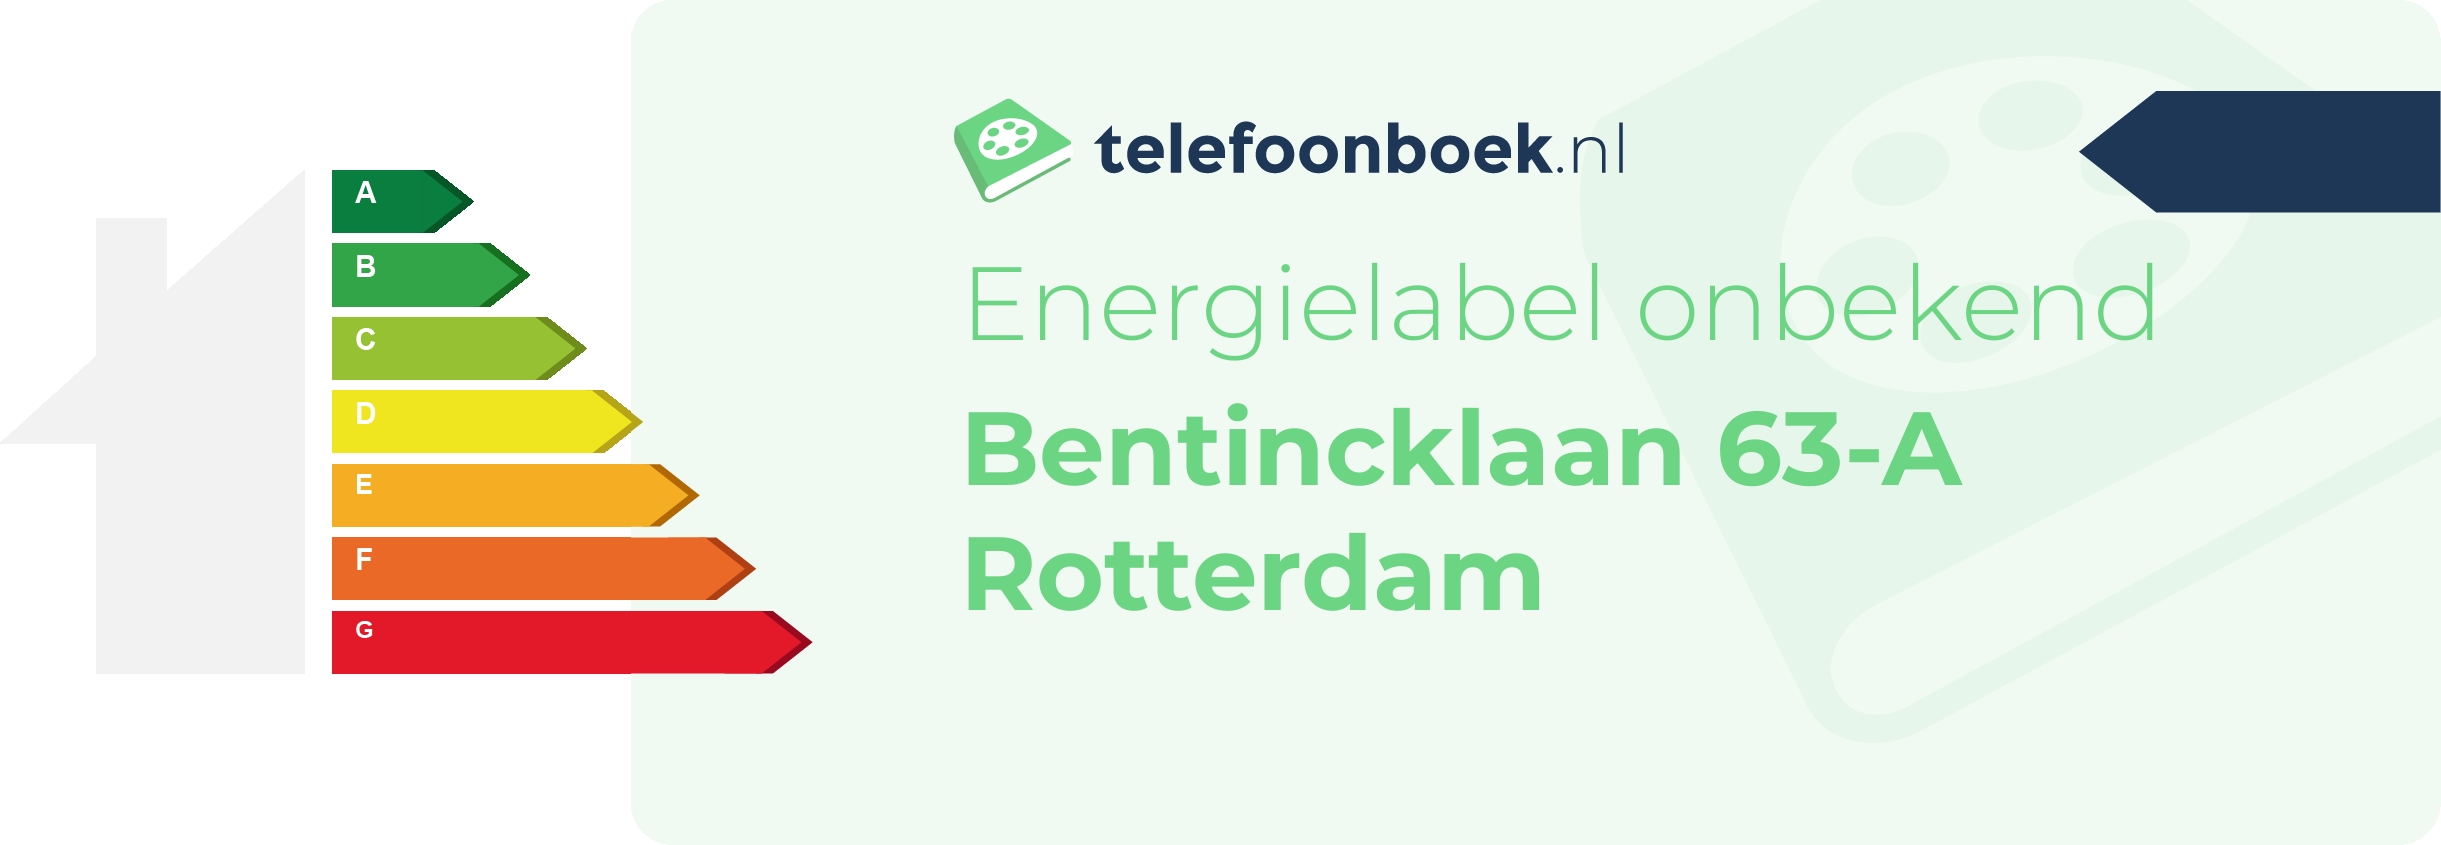 Energielabel Bentincklaan 63-A Rotterdam